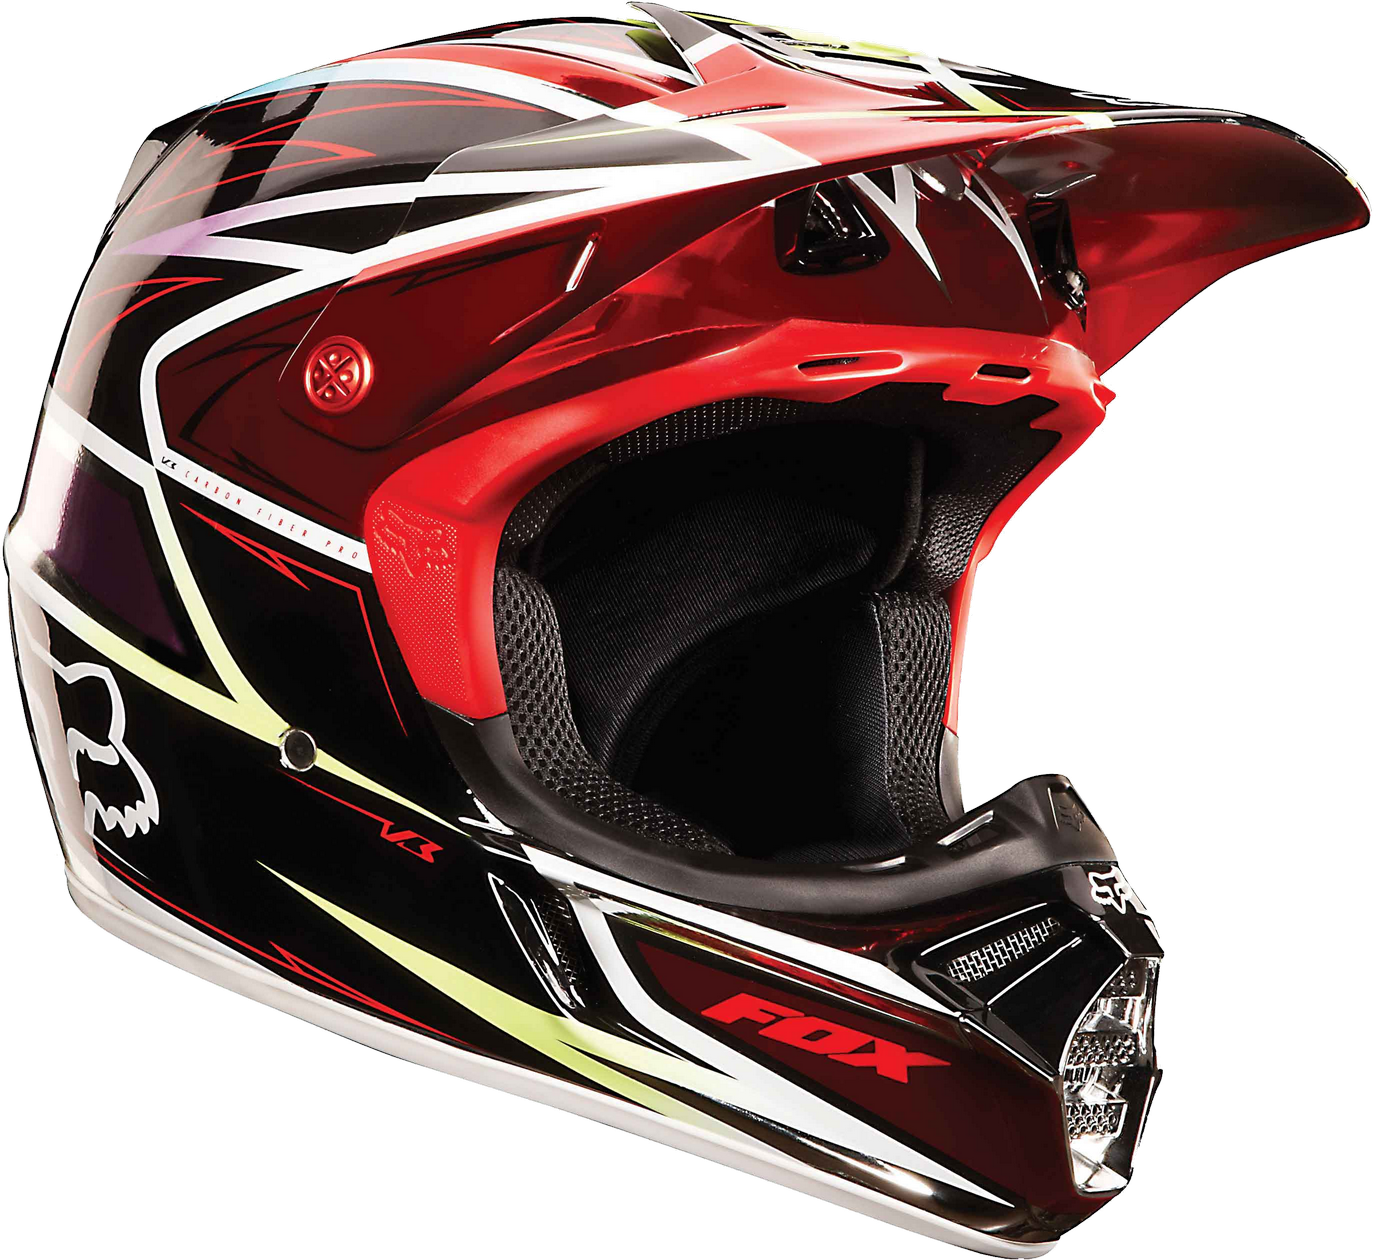 Motorsiklo helmet PNG Transparent Image